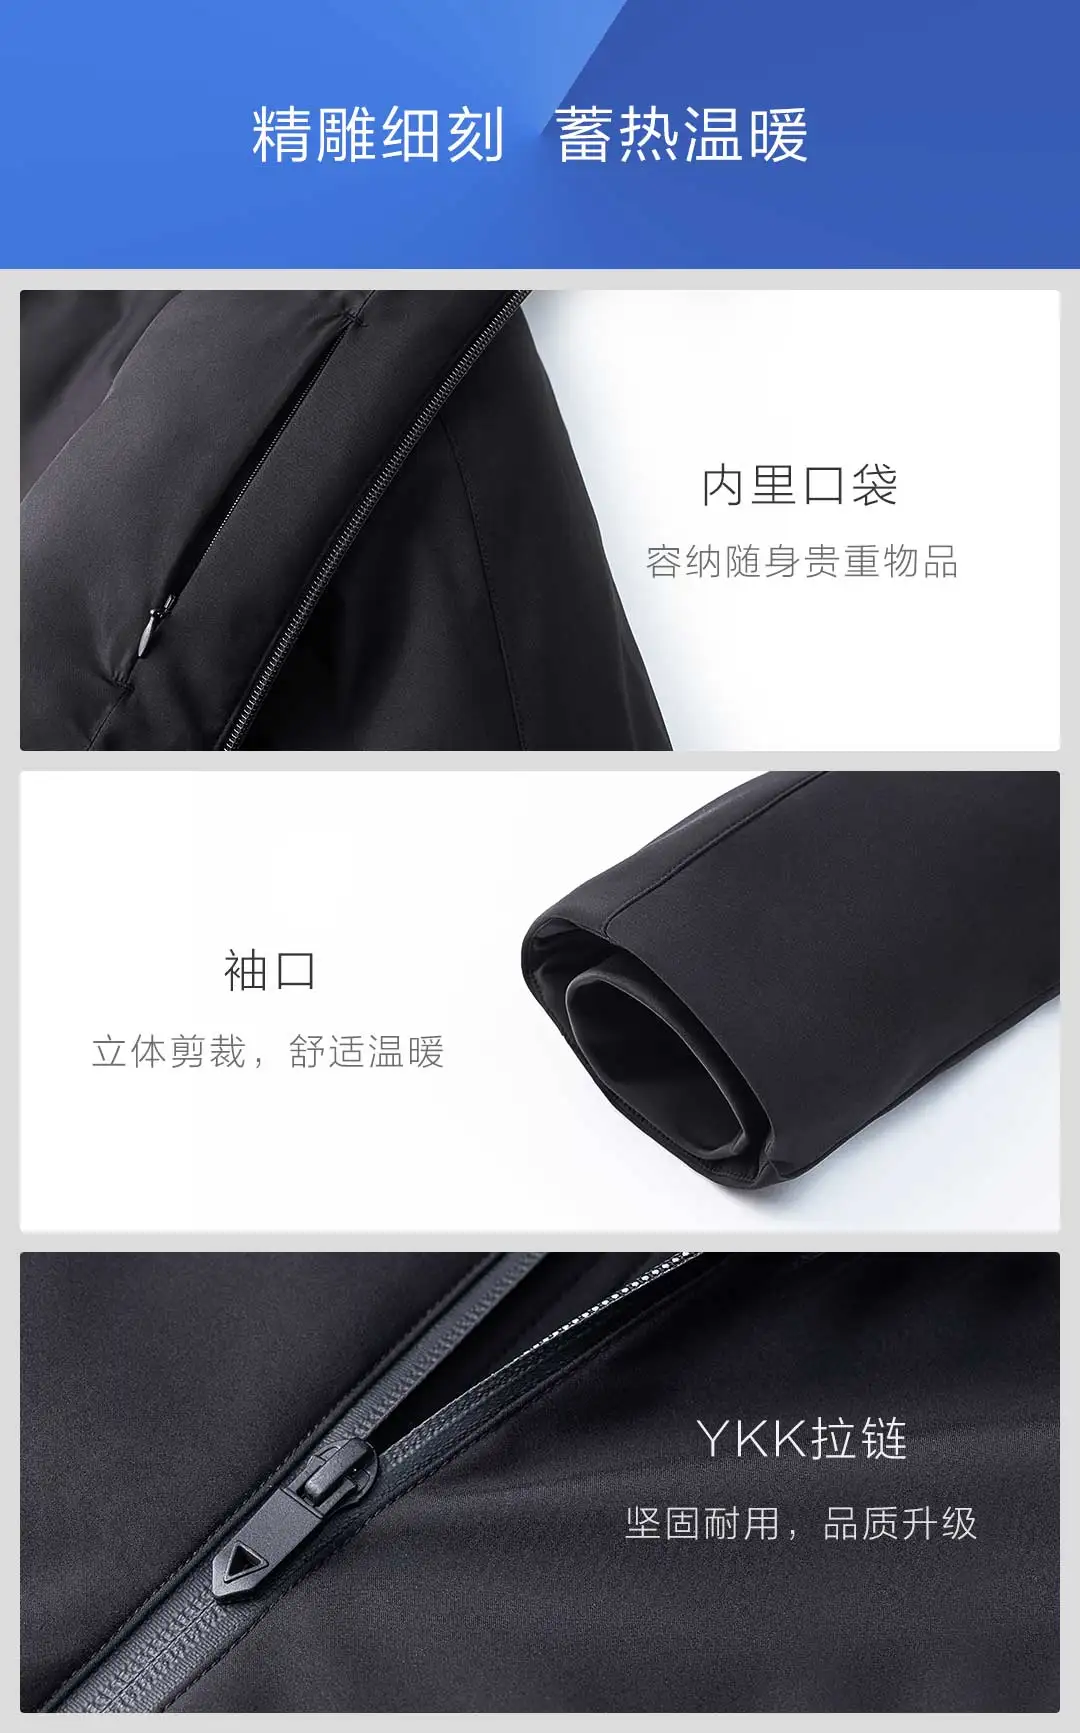 Xiaomi 90fen терморегулируемый пуховик 90% гусиный пух умный нагрев полный тепло 4 уровня Водонепроницаемый